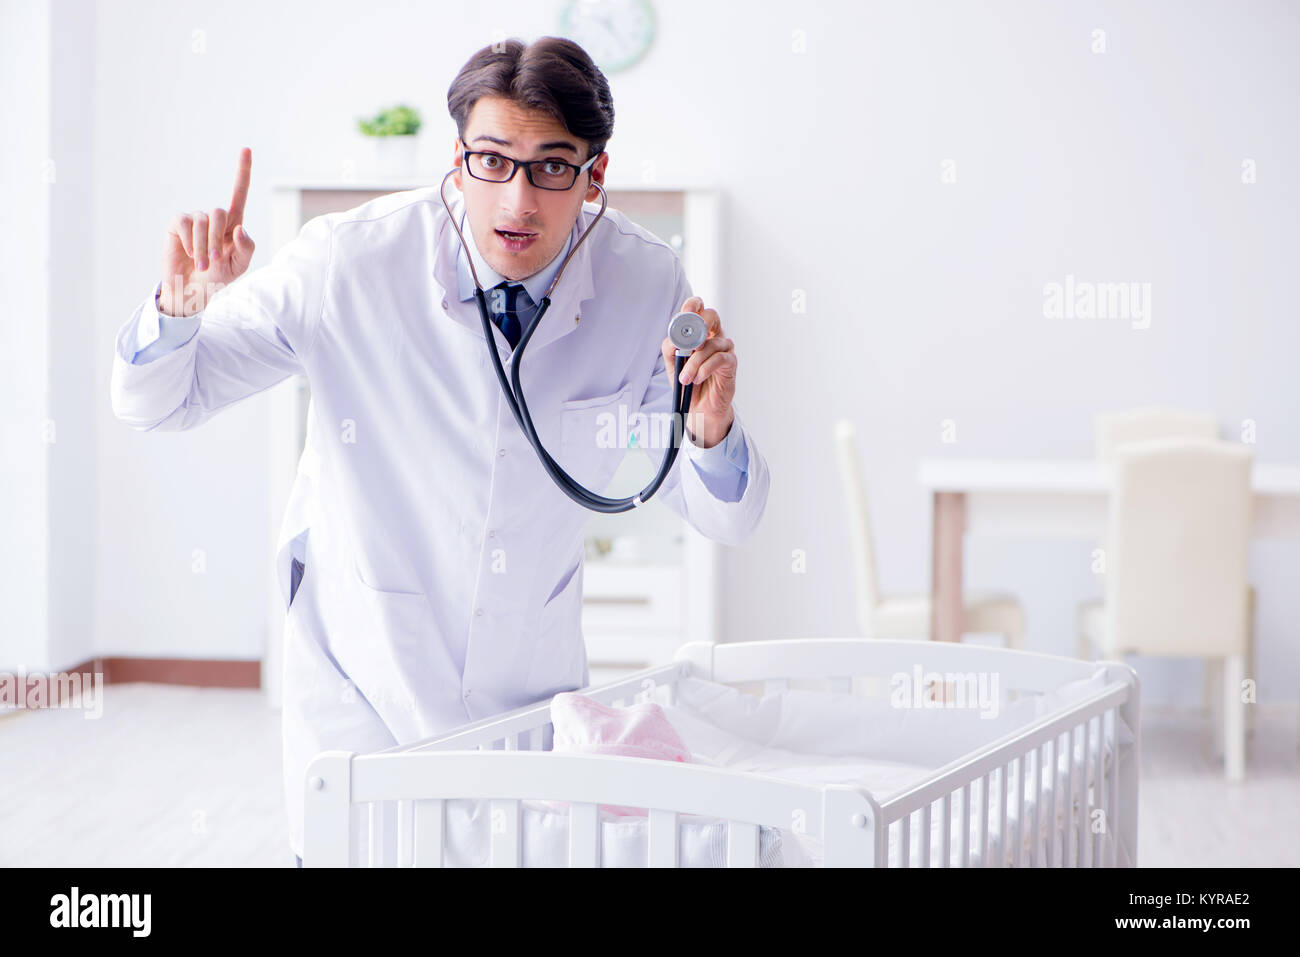 Mann männlich Kinderarzt in der Nähe Kinderbett Vorbereitung zu prüfen  Stockfotografie - Alamy